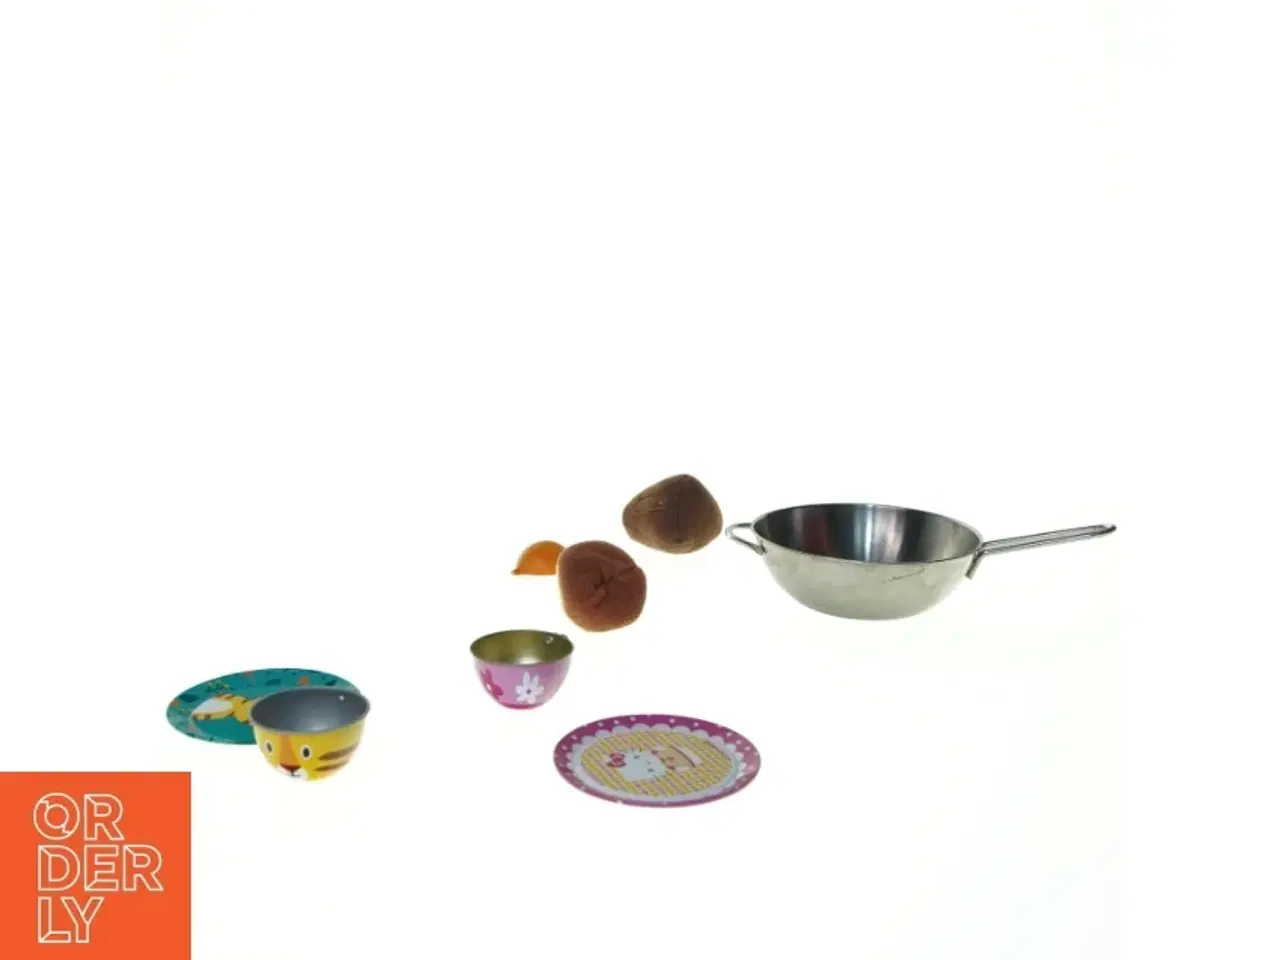 Billede 1 - Forskellige køkkengrej legetøj (str. 13 x 5 cm)